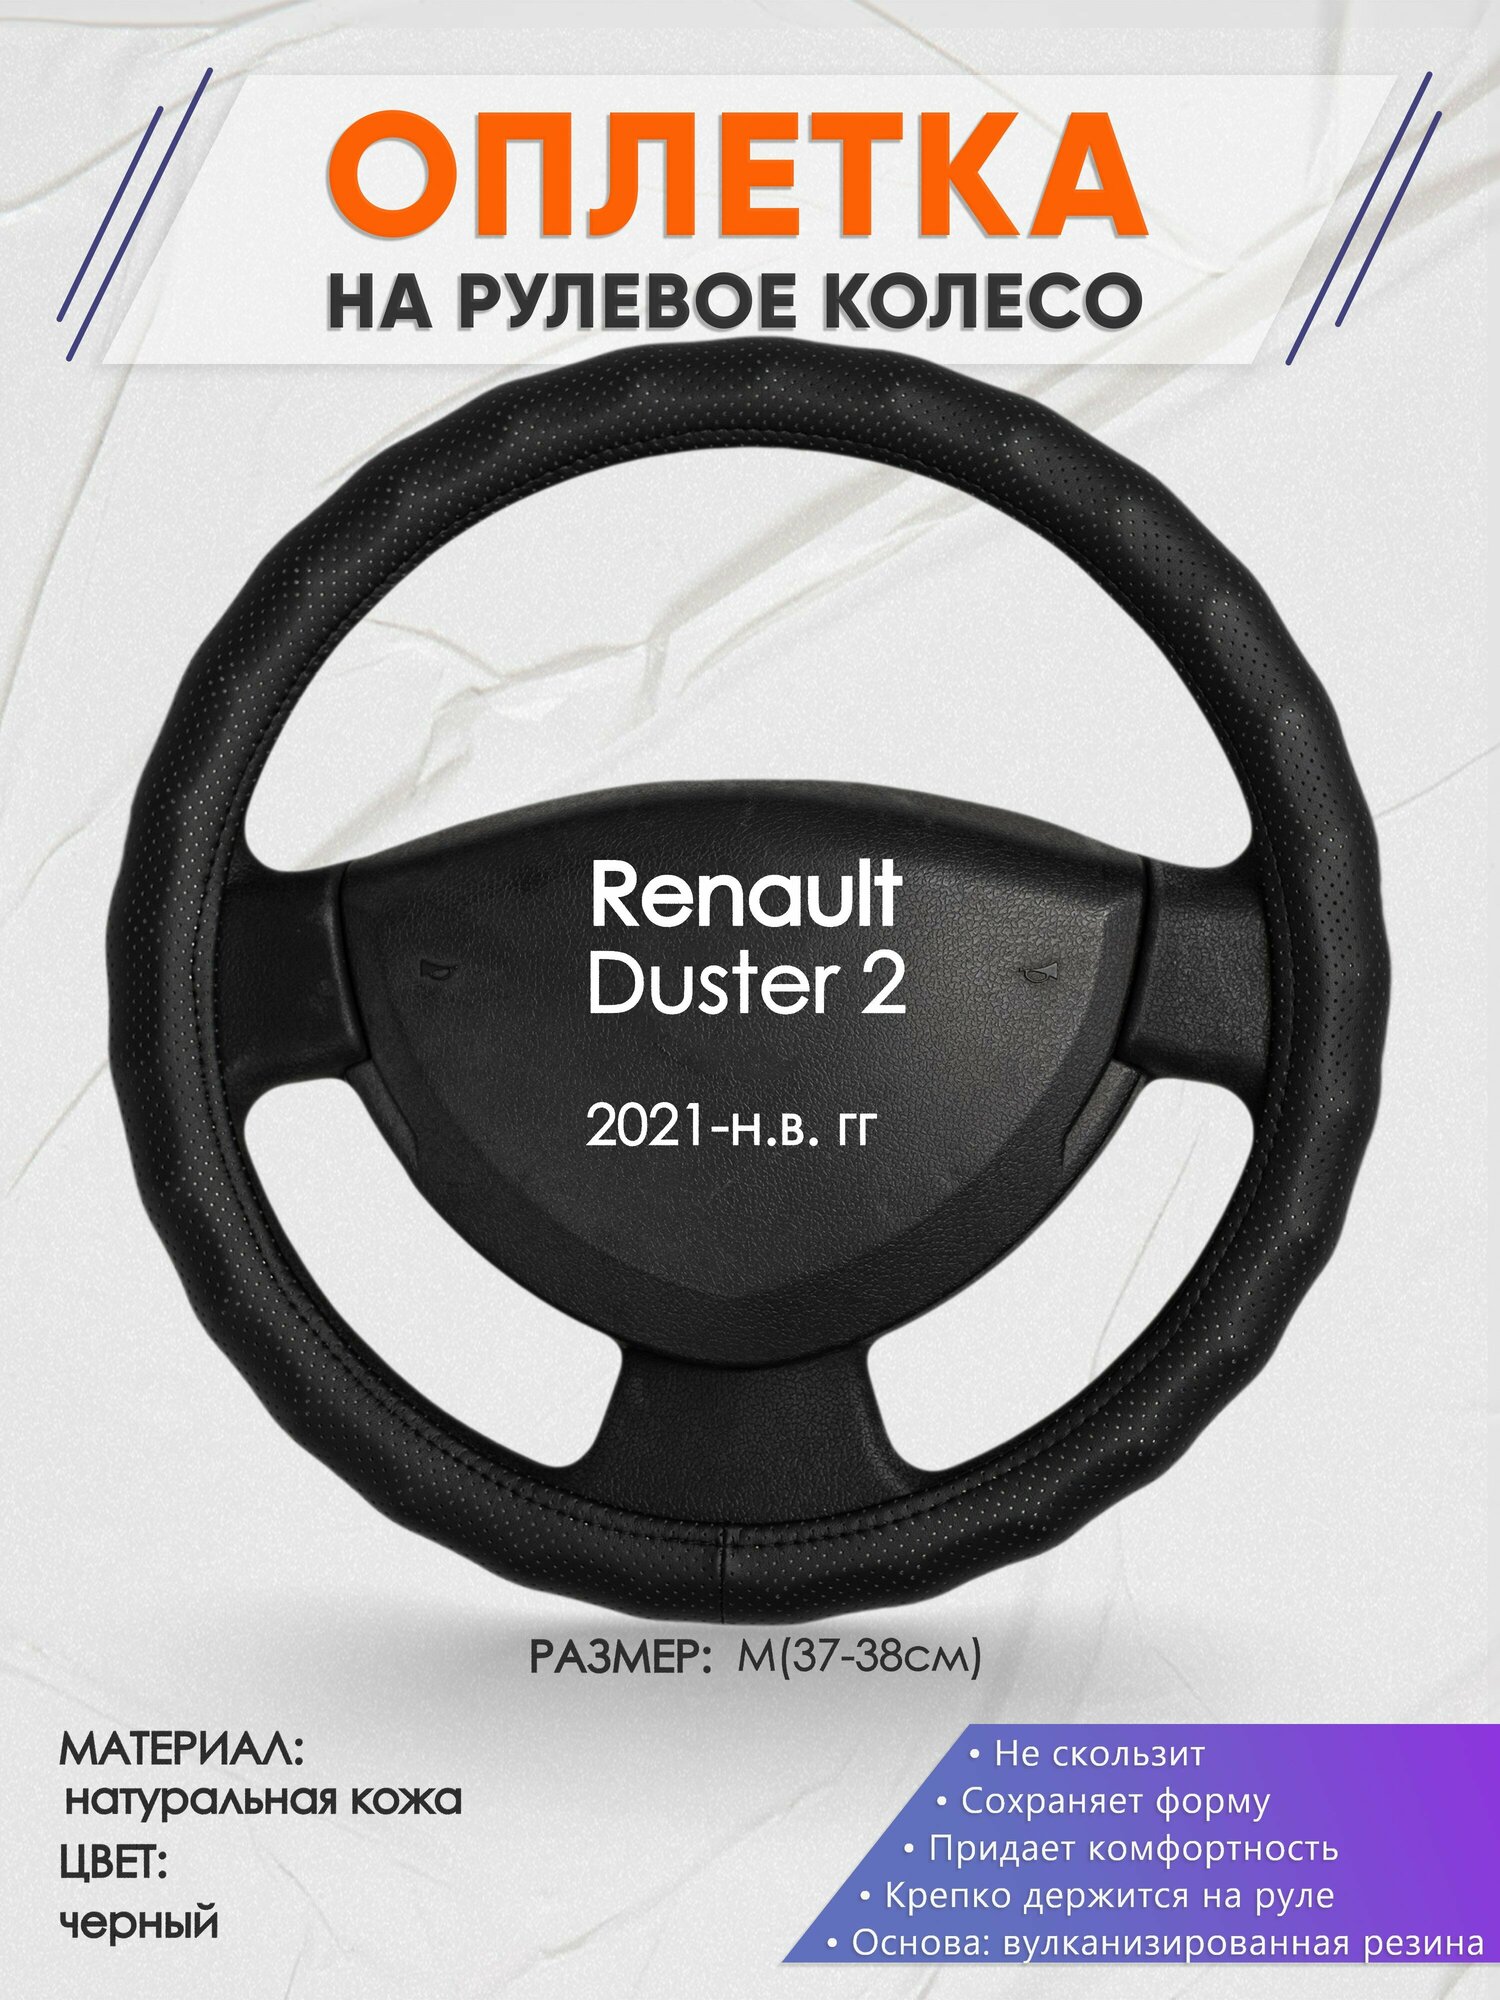 Оплетка на руль для Renault Duster 2(Рено Дастер 2) 2021-н. в M(37-38см) Натуральная кожа 31